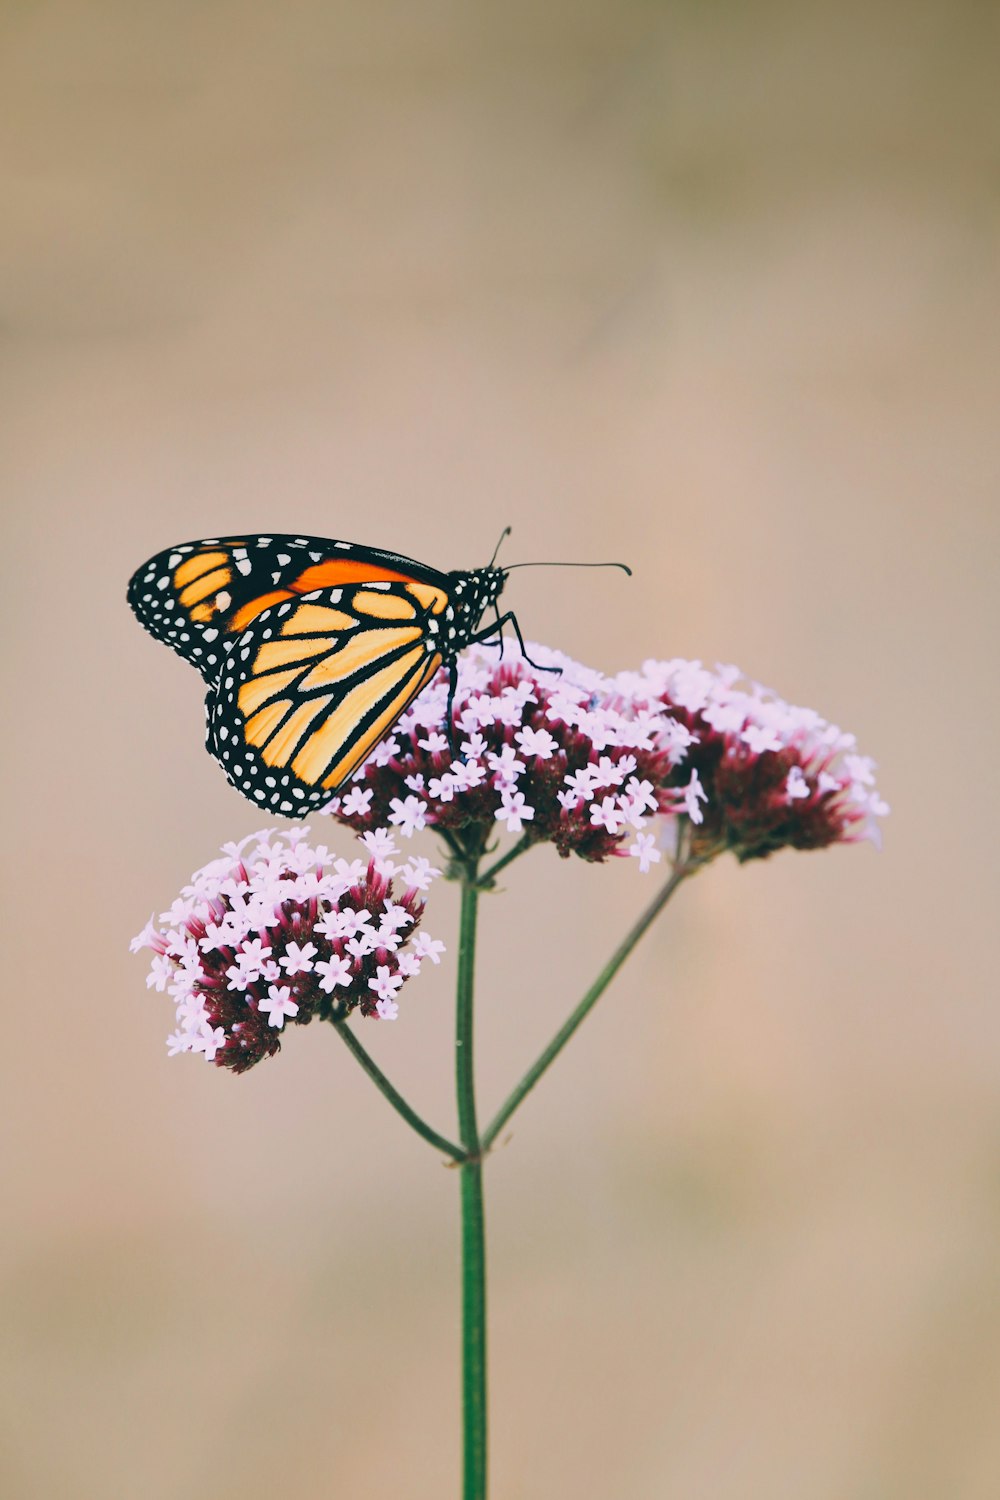 borboleta monarca empoleirada na flor rosa na fotografia de perto durante o dia